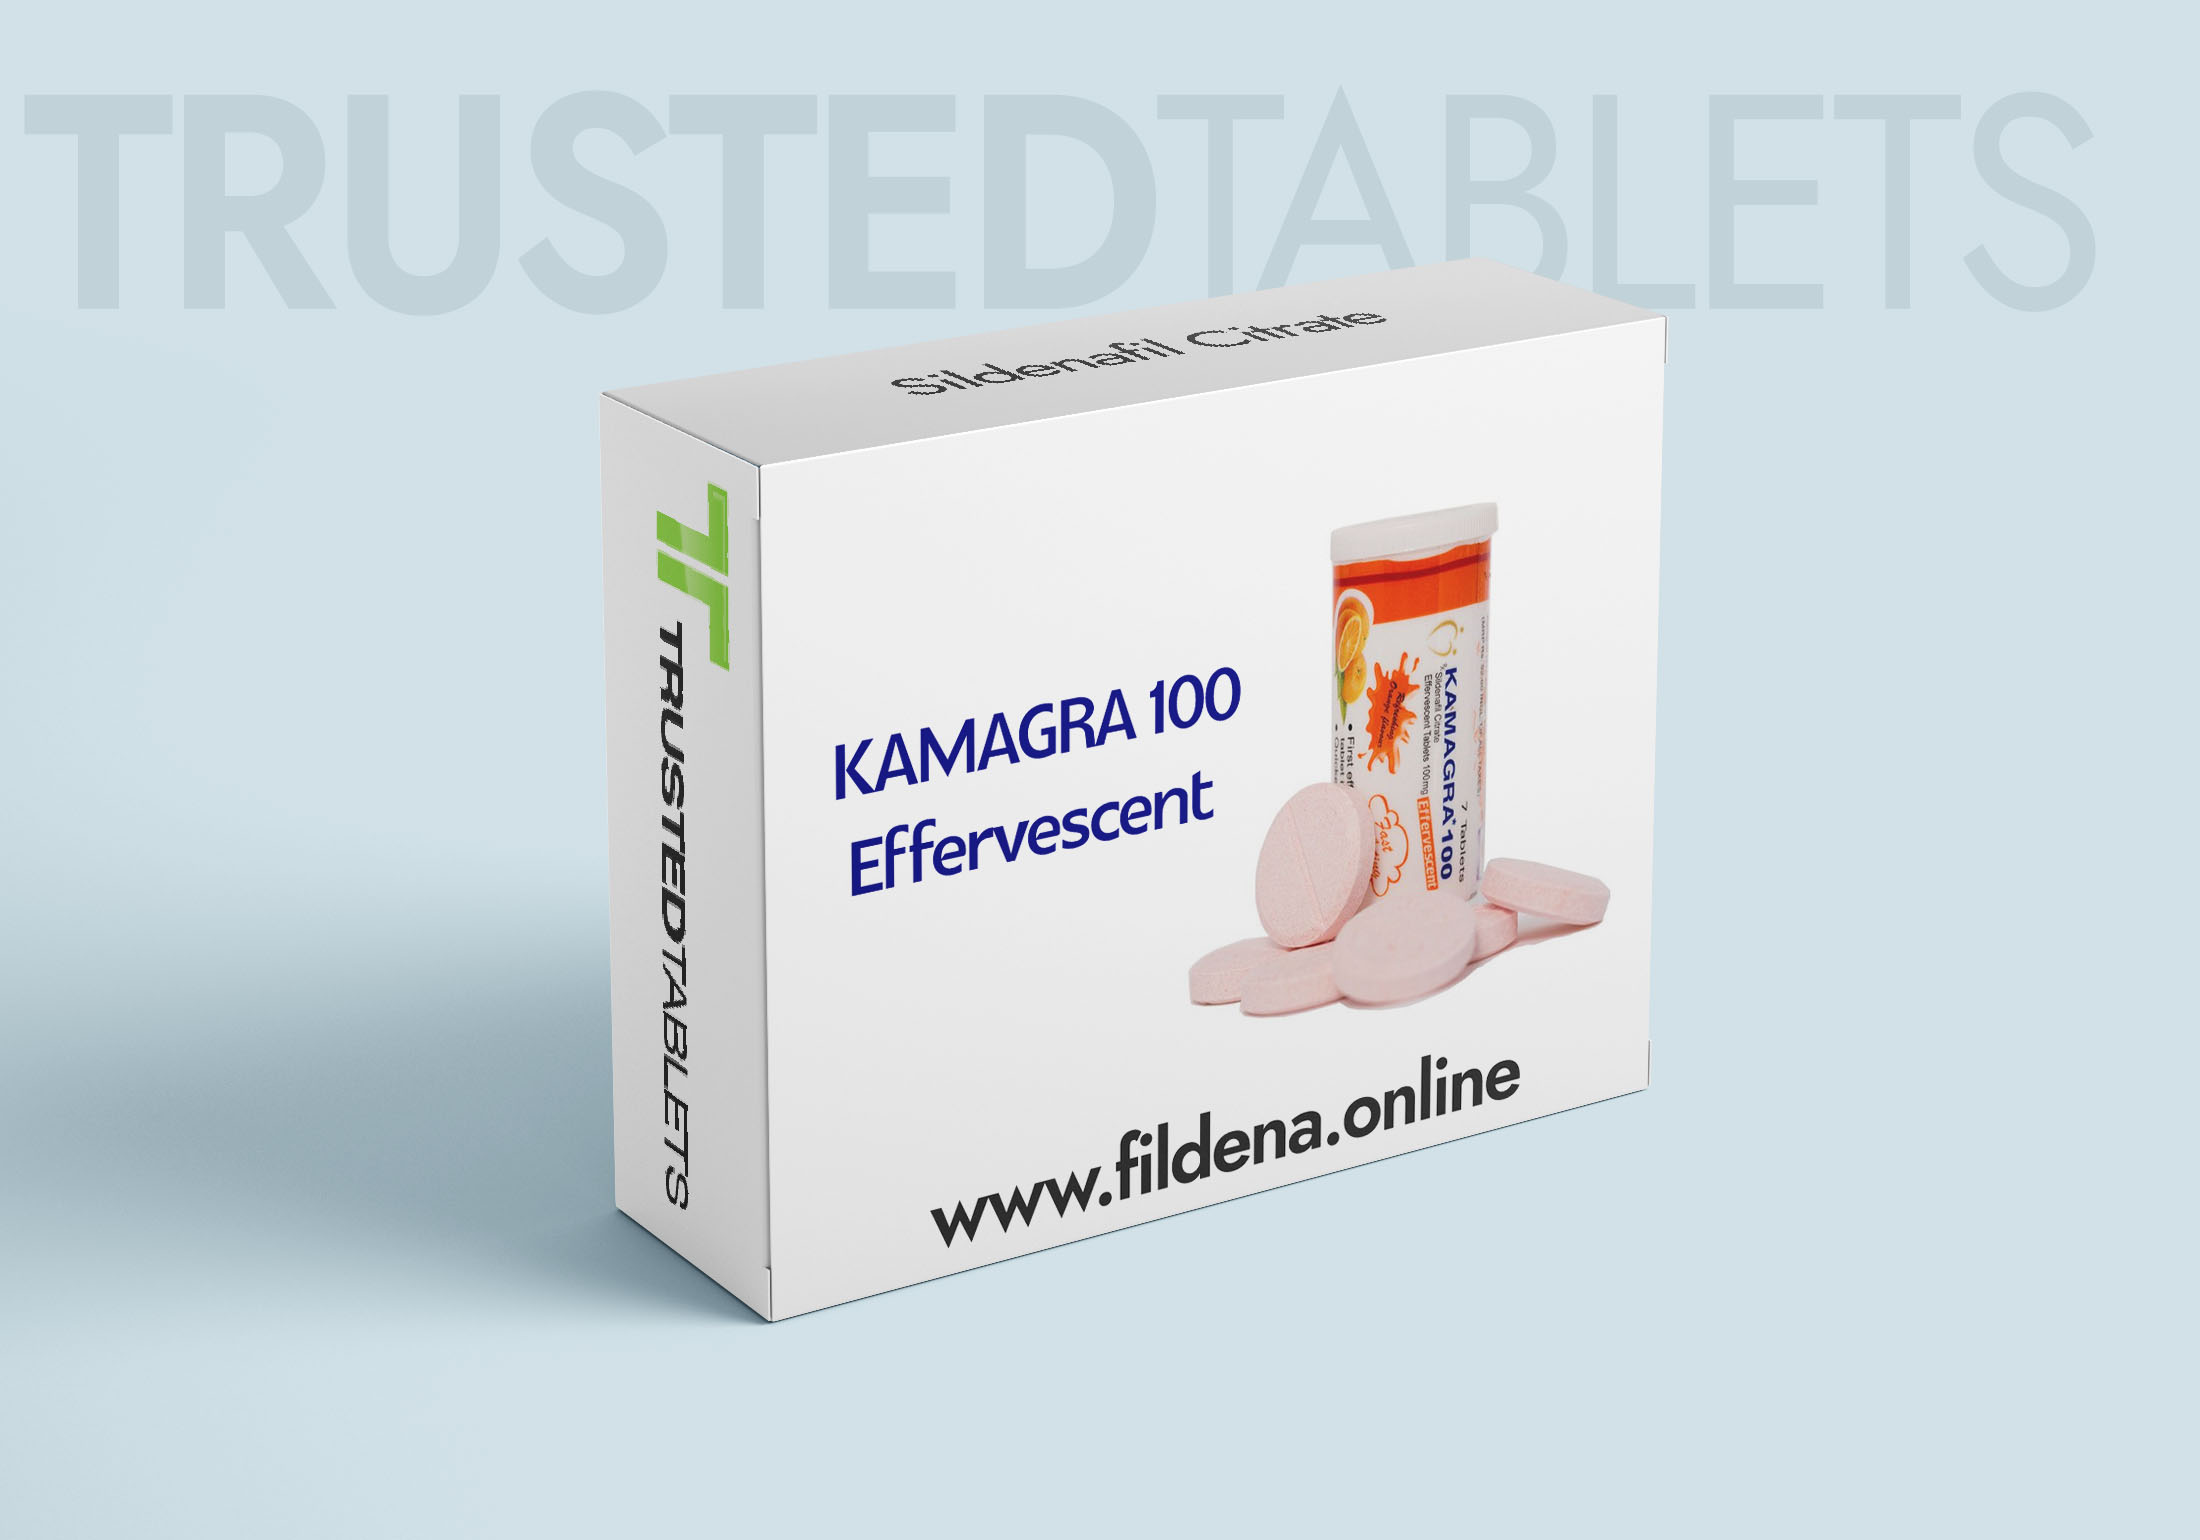 Kamagra Effervescent TrustedTablets